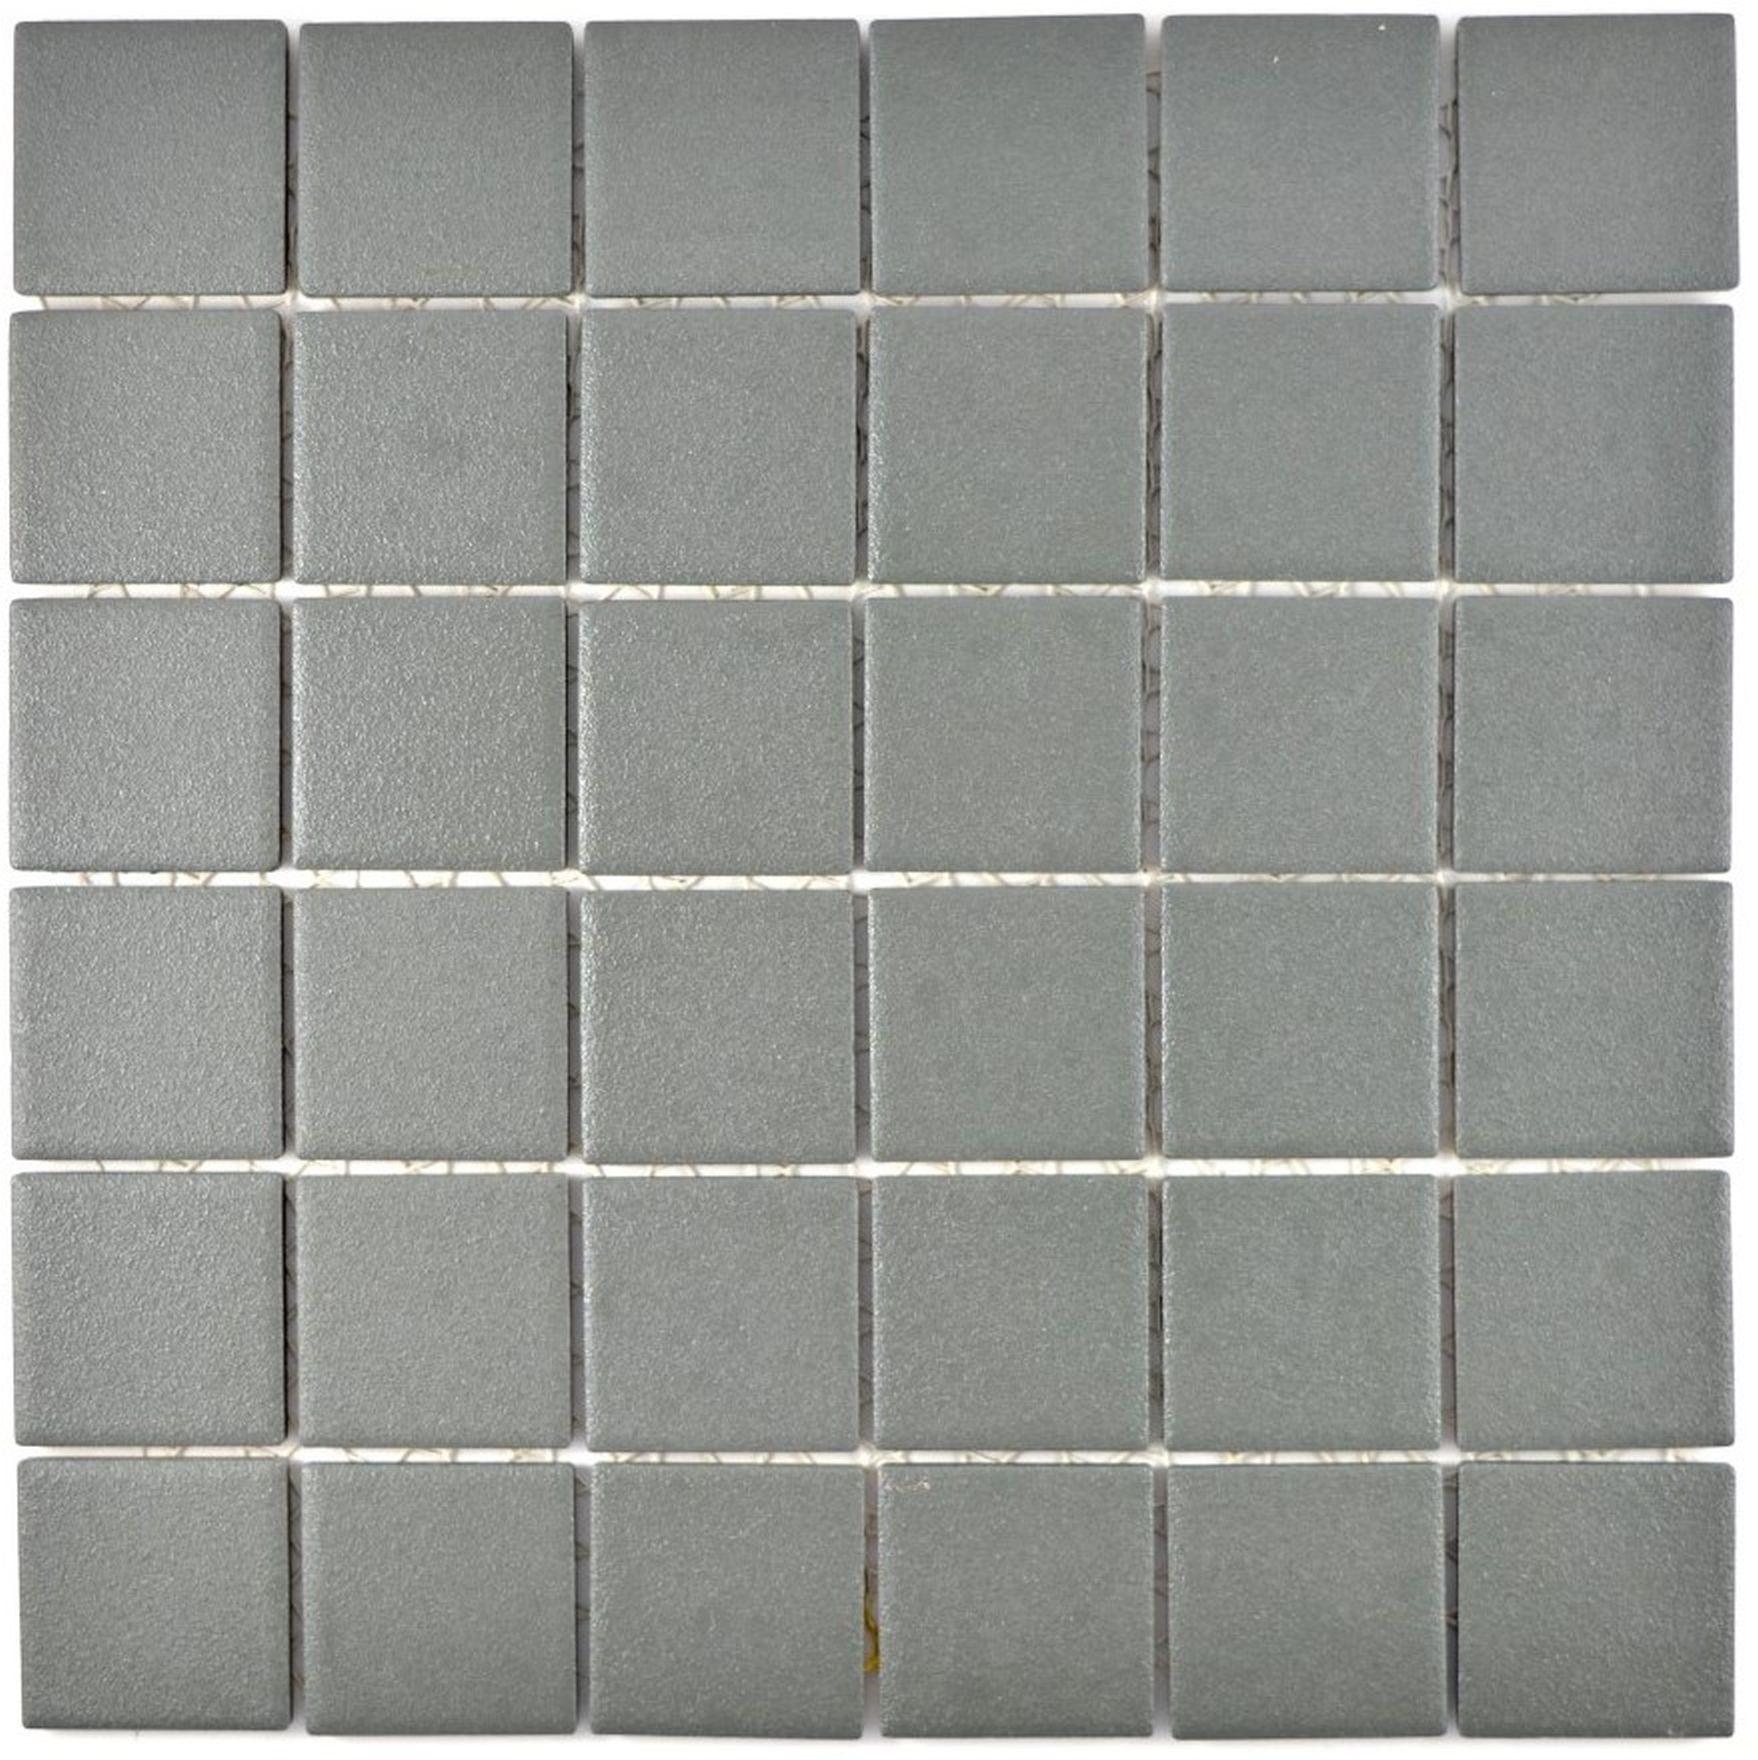 Mosani Mosaikfliesen Keramik Mosaik Fliese grau metall RUTSCHEMMEND RUTSCHSICHER Küche